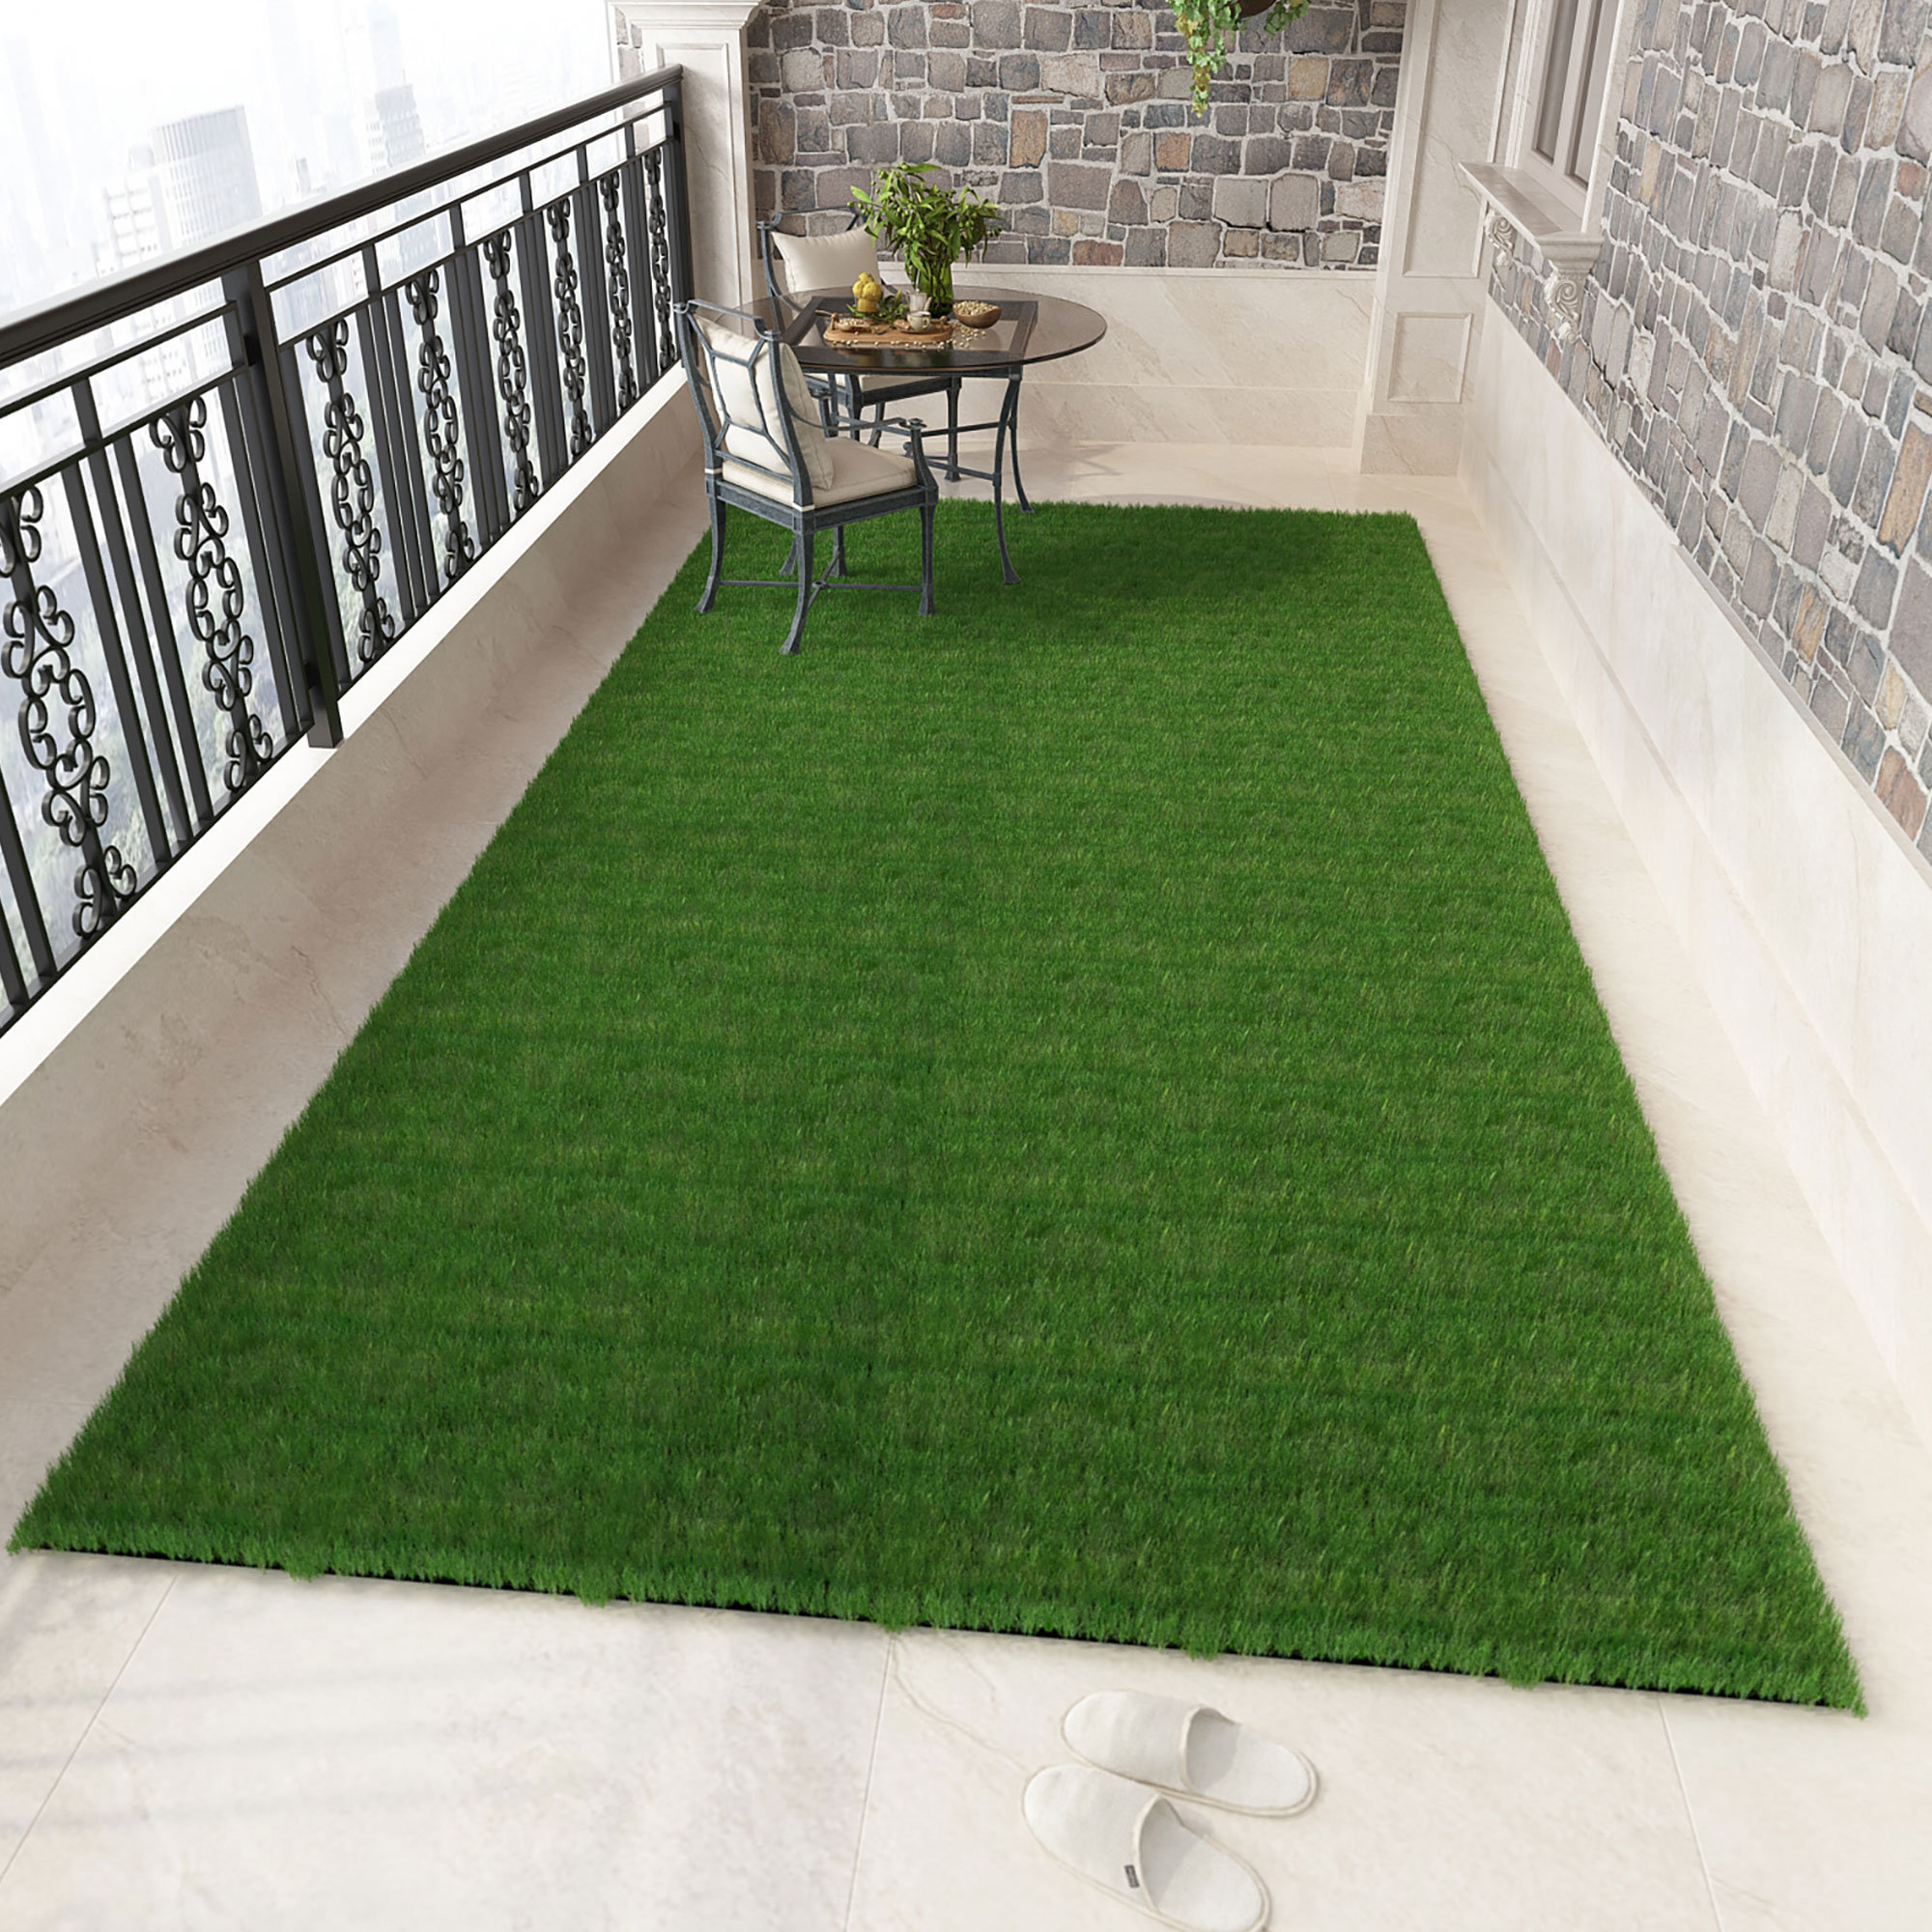 Willstar épaississement gazon artificiel pelouse Faux gazon tapis  synthétique intérieur extérieur paysage Golf jardin vert décor 